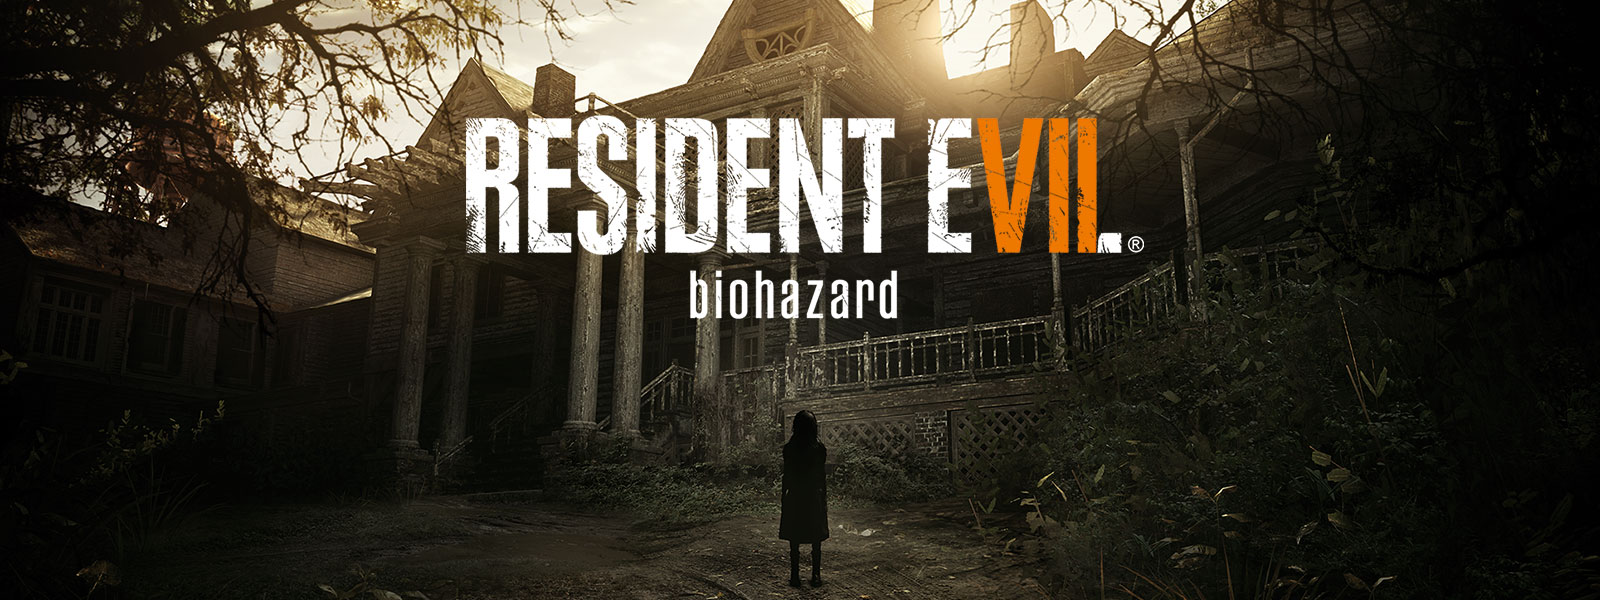 Resident Evil 7 biohazard gold edition-boxshot voor een scène met een griezelig meisje dat voor een spookhuis staat